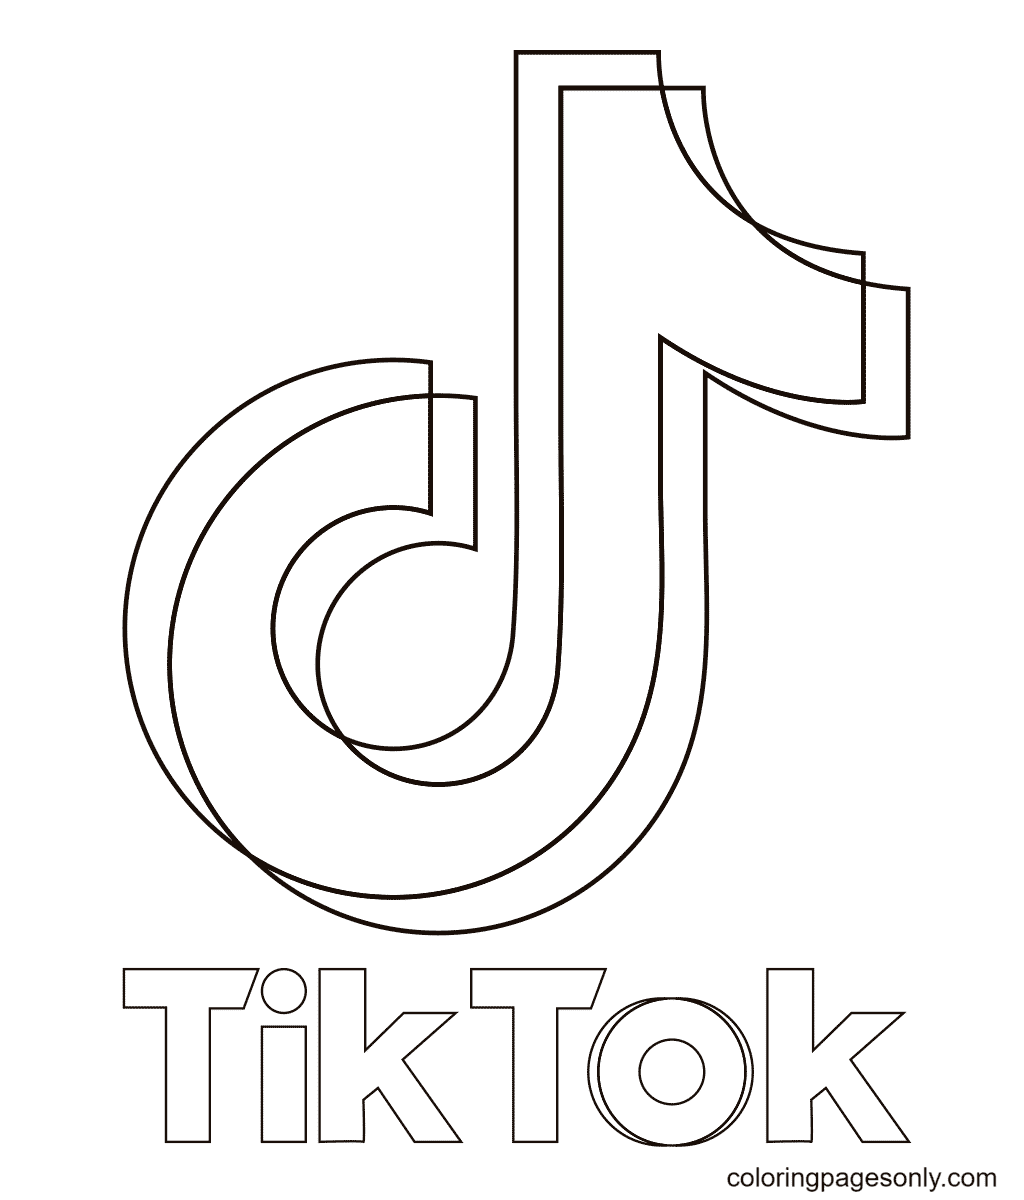 شعار تيك توك تيك توك من تيك توك